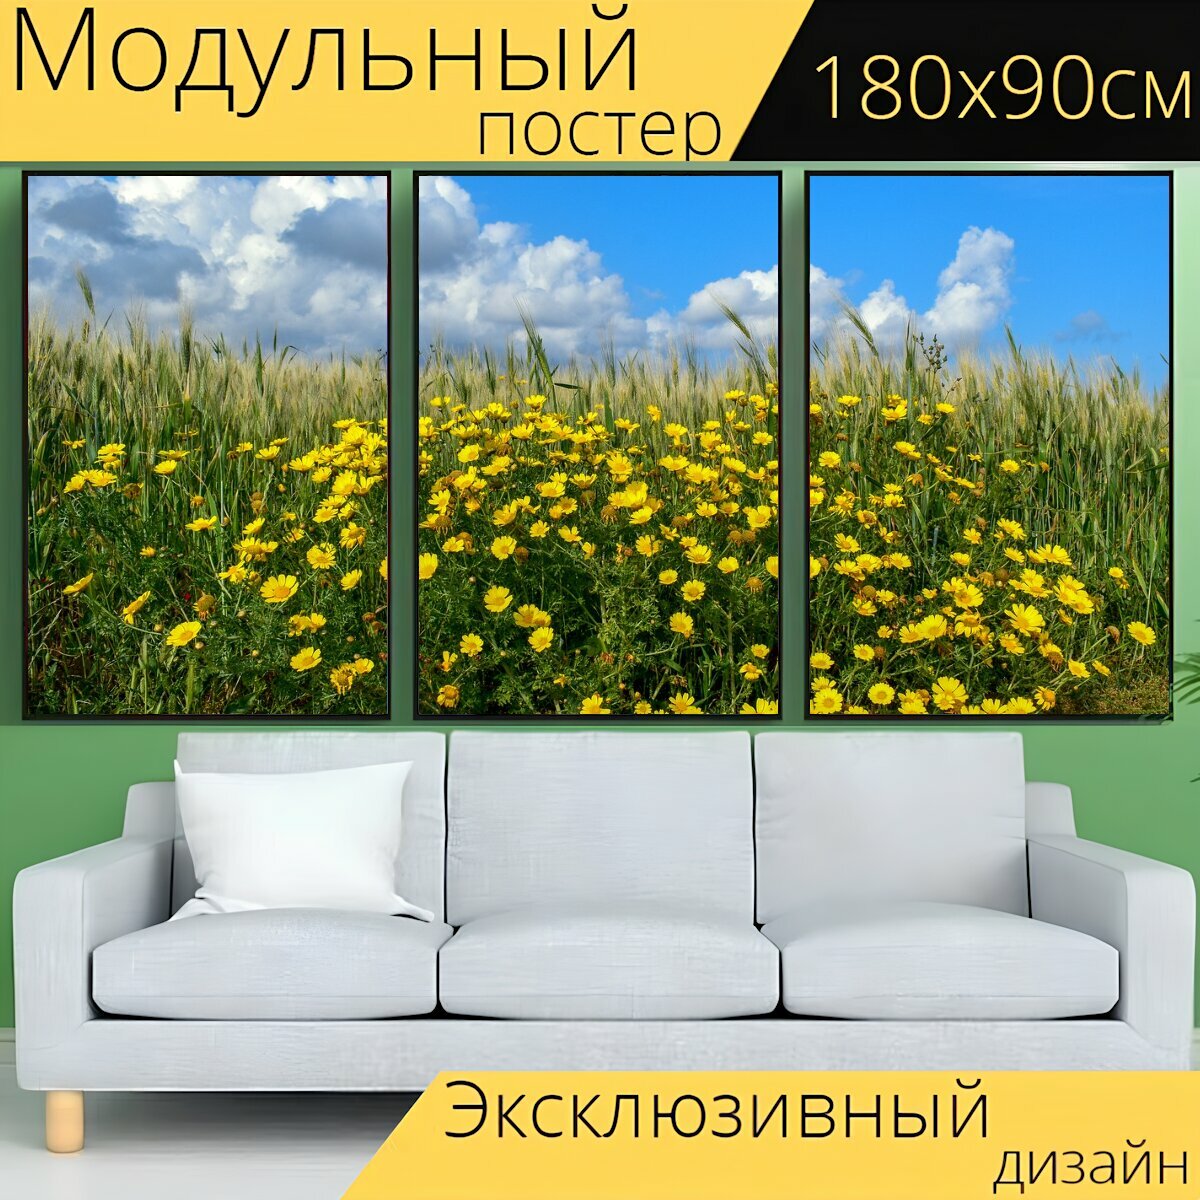 Модульный постер "Весна, поле, цветы" 180 x 90 см. для интерьера